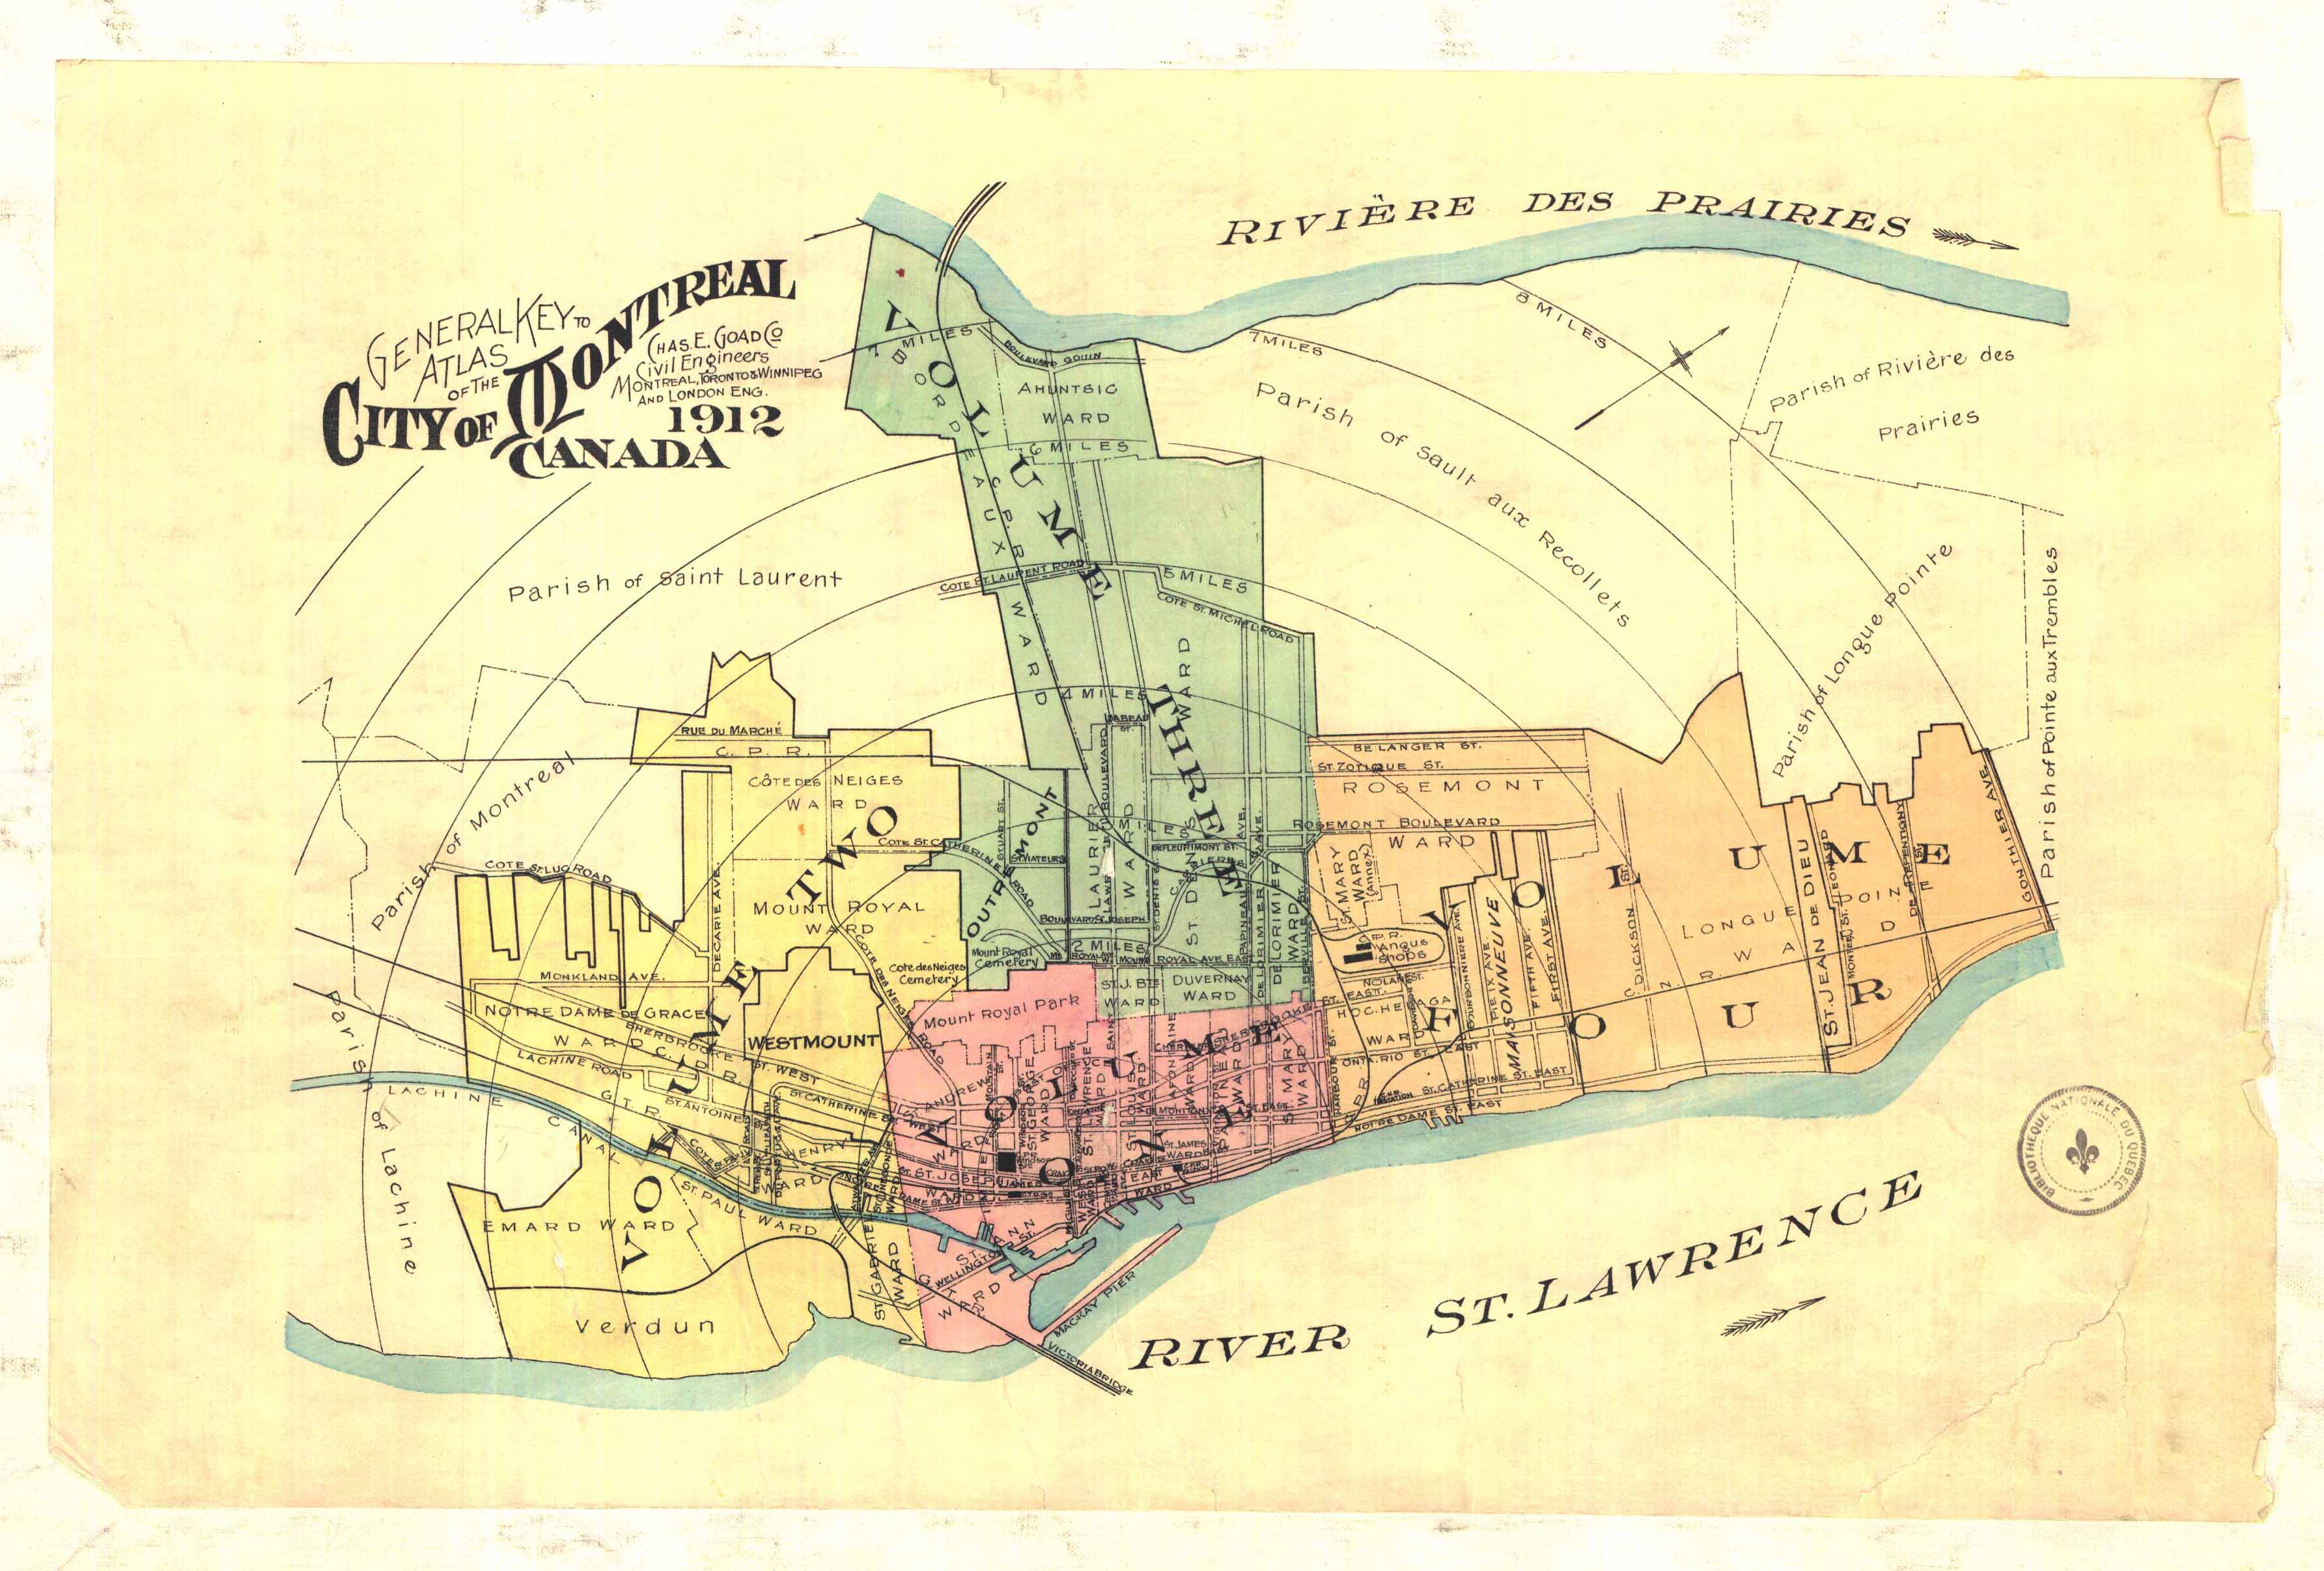 Carte géographique détaillée de la ville de Montréal et ses environs